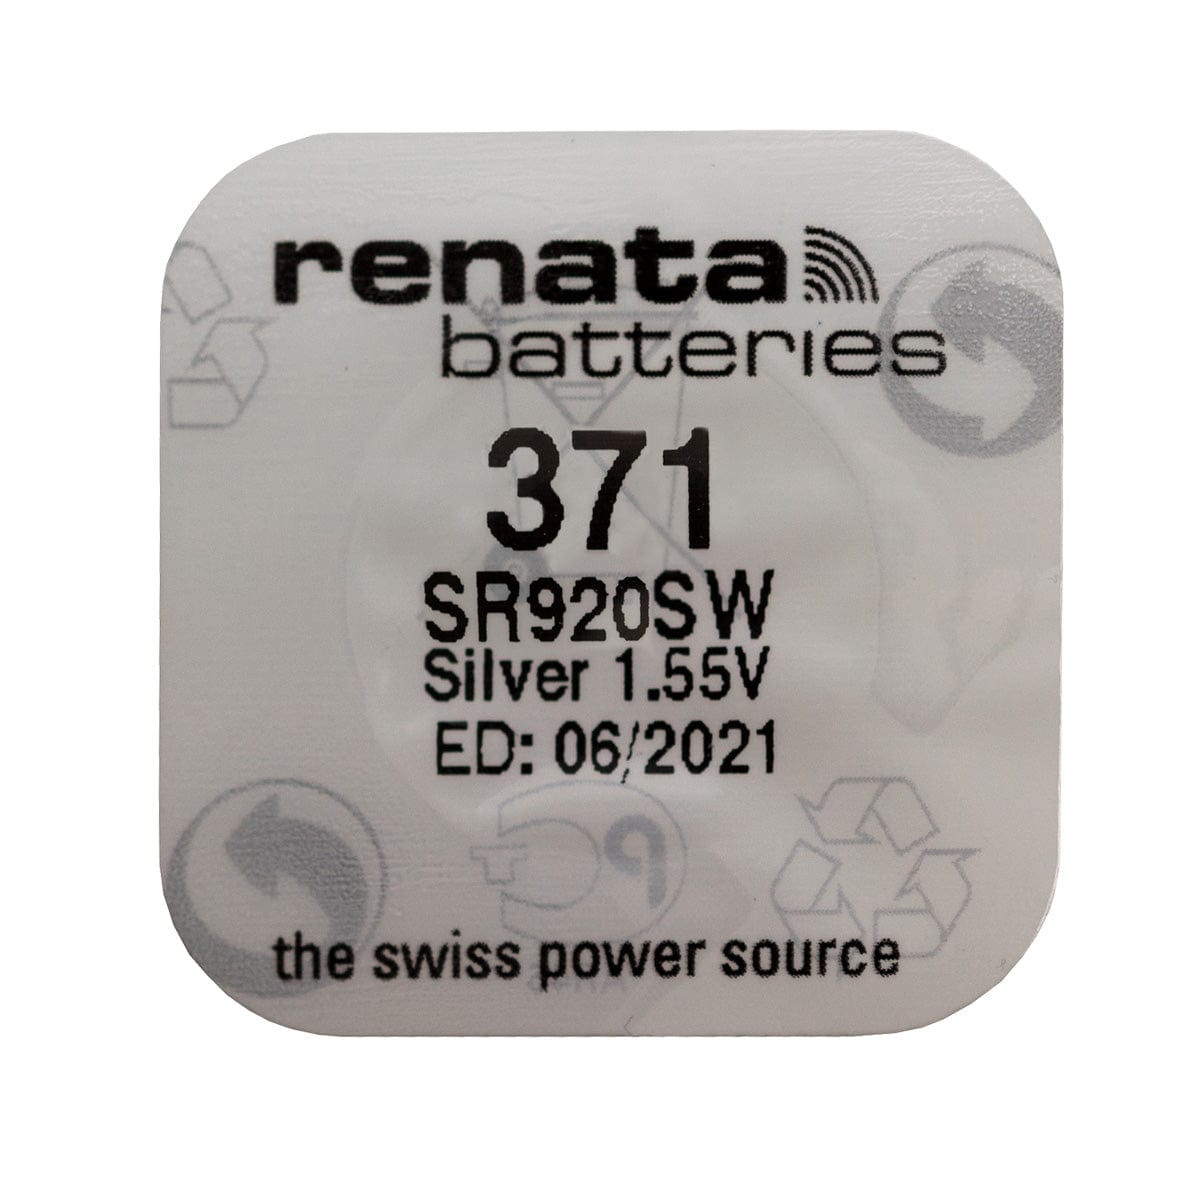 RENATA WATCH BATTERY 1.55V SWISS MADE BATTERIES 371 SR920SW